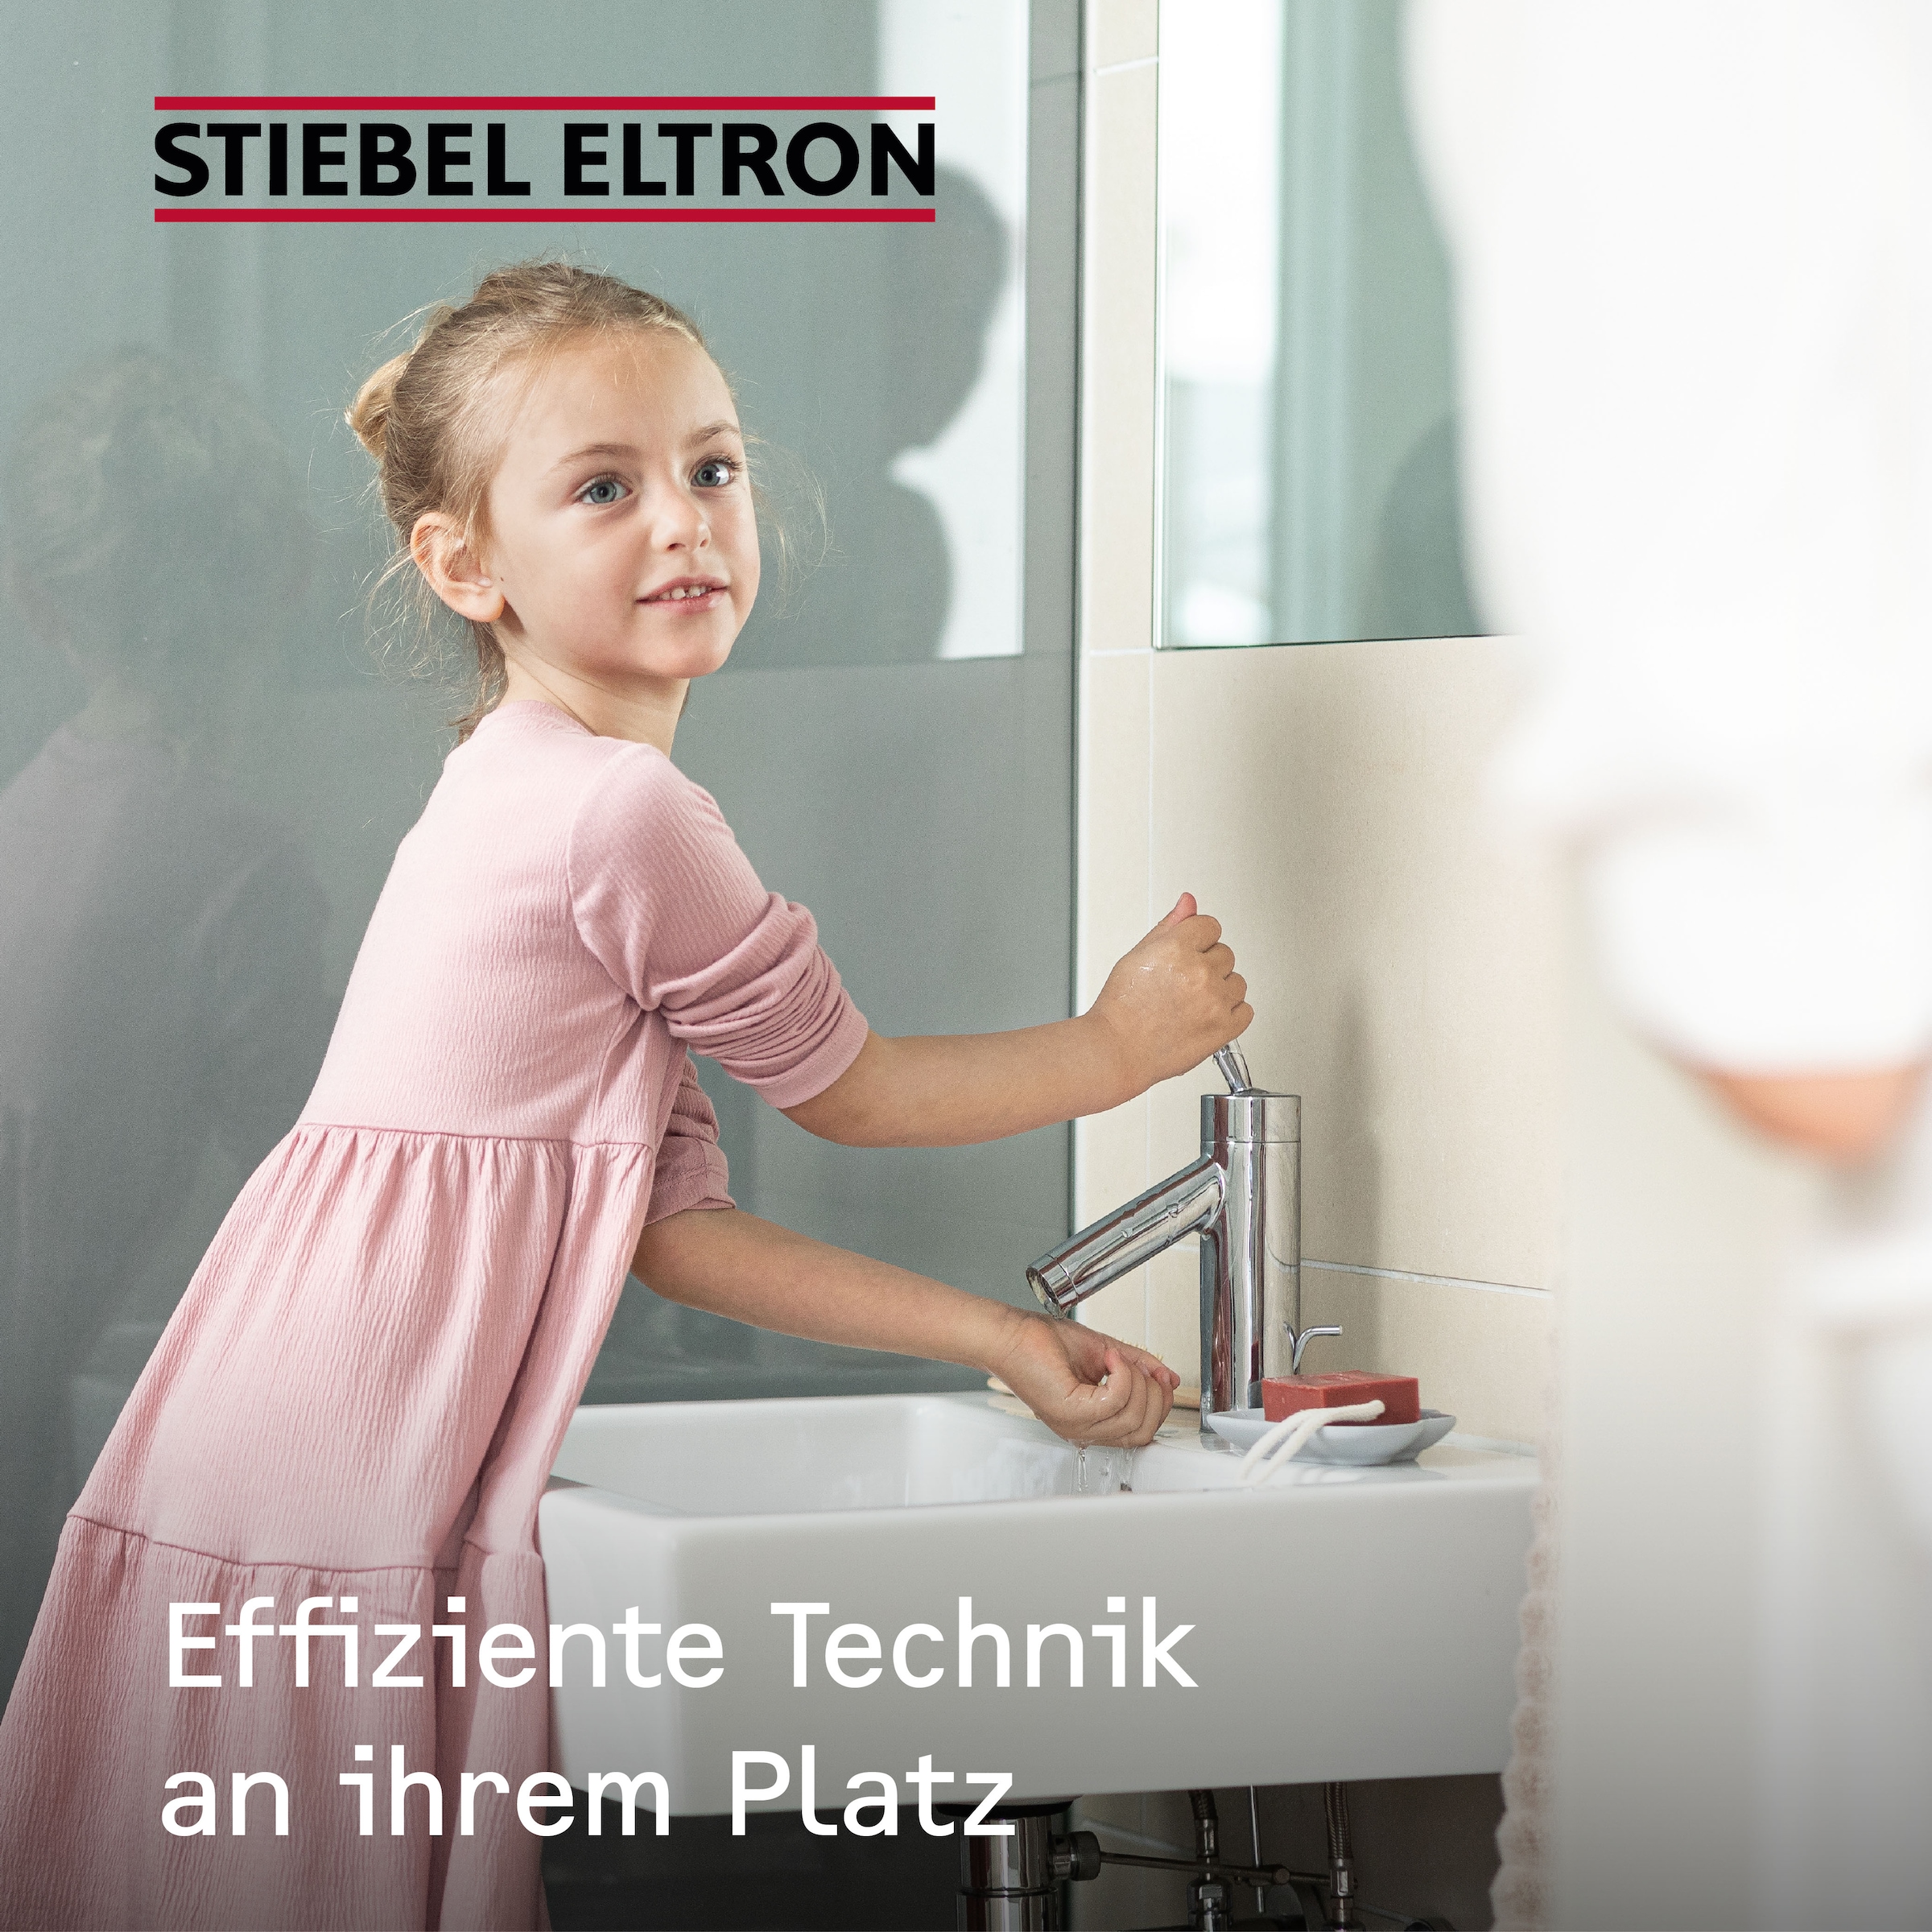 STIEBEL ELTRON Klein-Durchlauferhitzer »DEM 6«, elektronisch, für Handwaschbecken, 5,7 kW, Festanschluss 230V